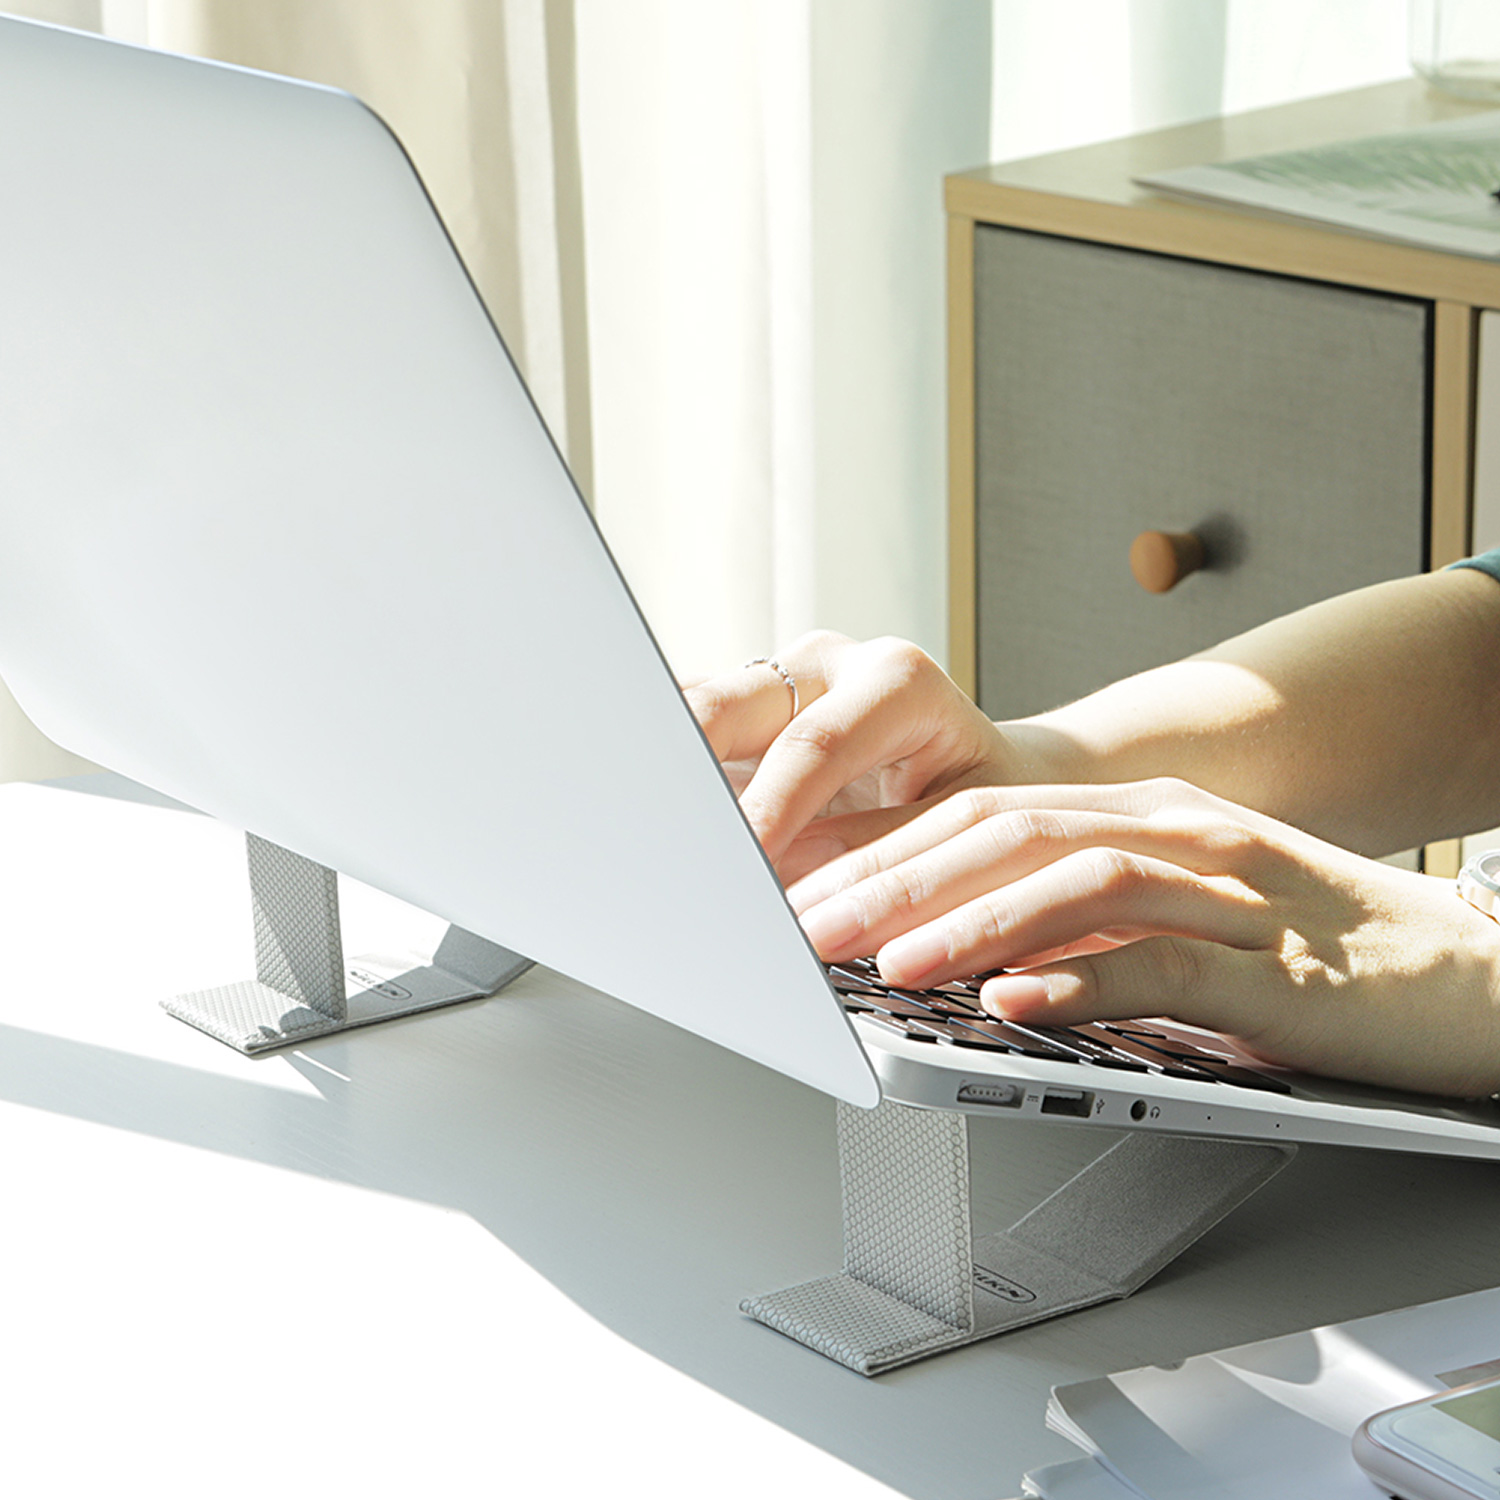 Podstawka pod laptopa  Nillkin Ascent Stand Mini - Właściwa pozycja ciała w czasie pracy przy komputerze